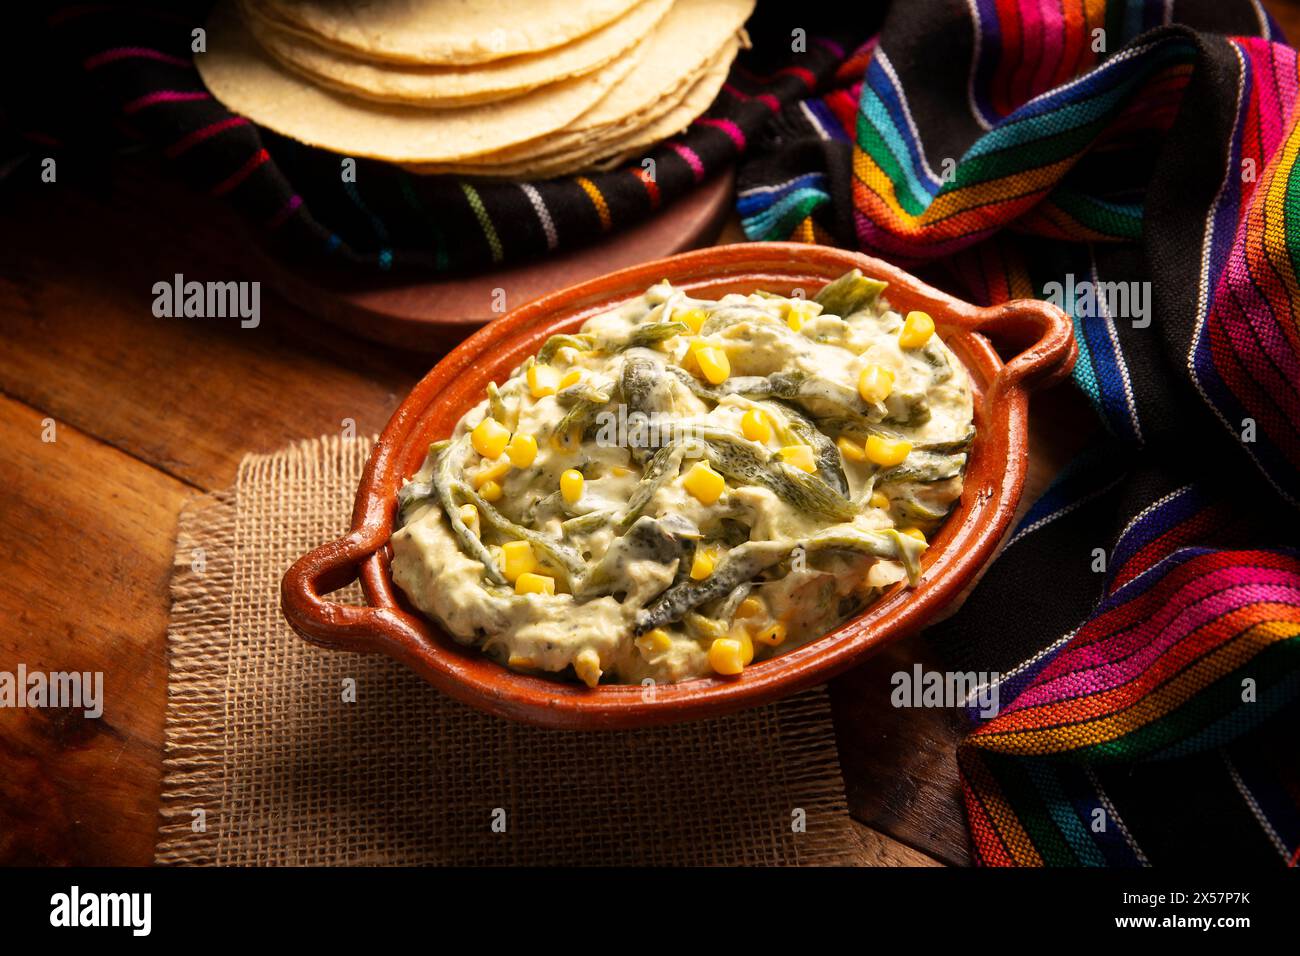 Rajas avec crème. Plat très populaire au Mexique qui se compose de lanières de piment poblano avec de la crème, il est servi en garniture ou en tacos, c'est un typi Banque D'Images